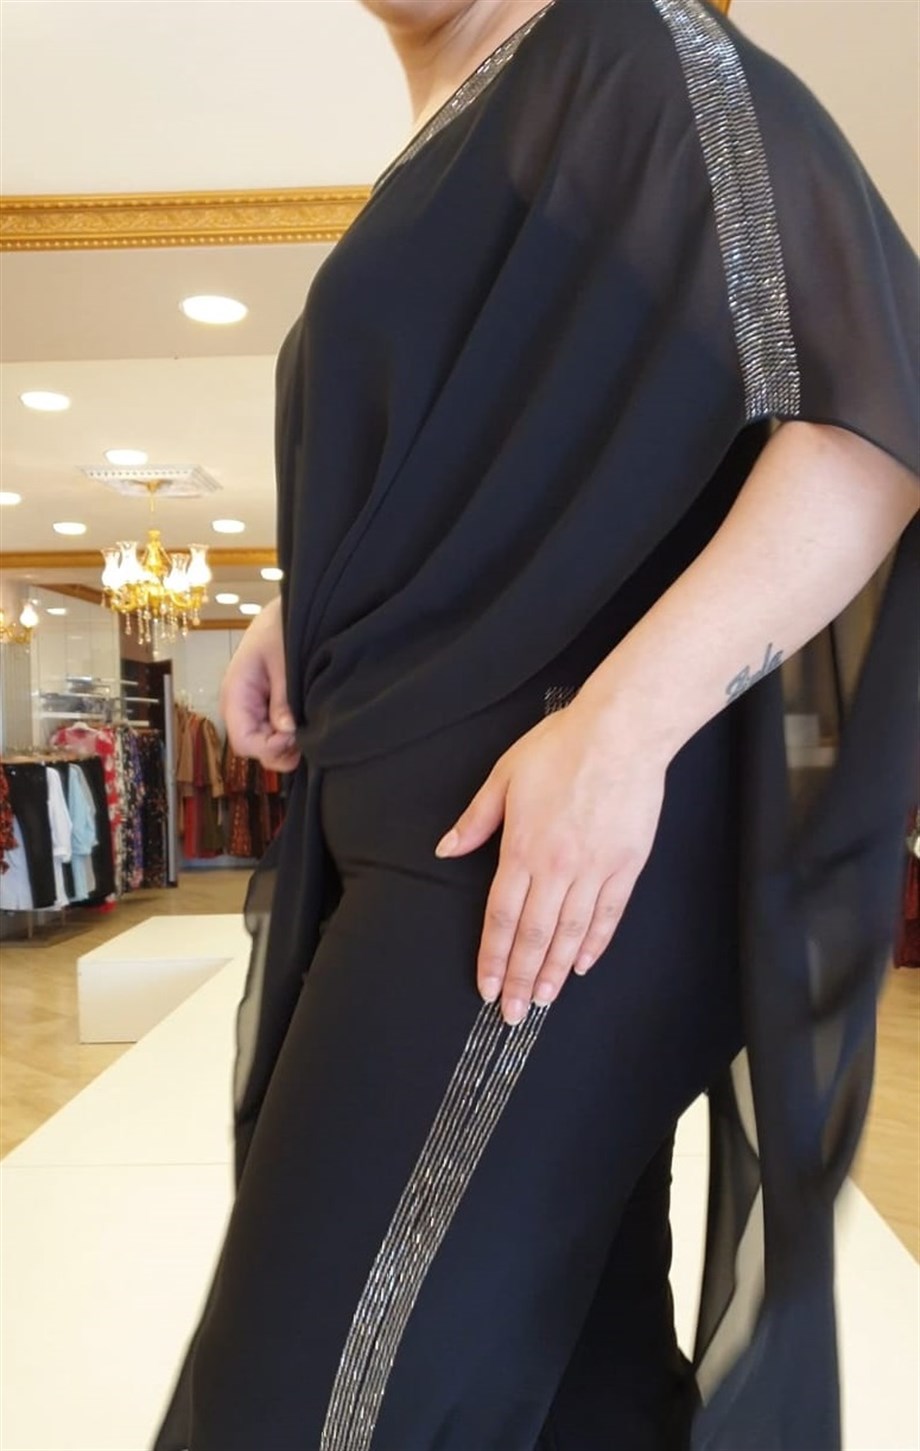 Büyük Beden Taş Şeritli Tulum Siyah | büyük beden abiye elbiseler modelleri  ve fiyatları | Bedrinxxl